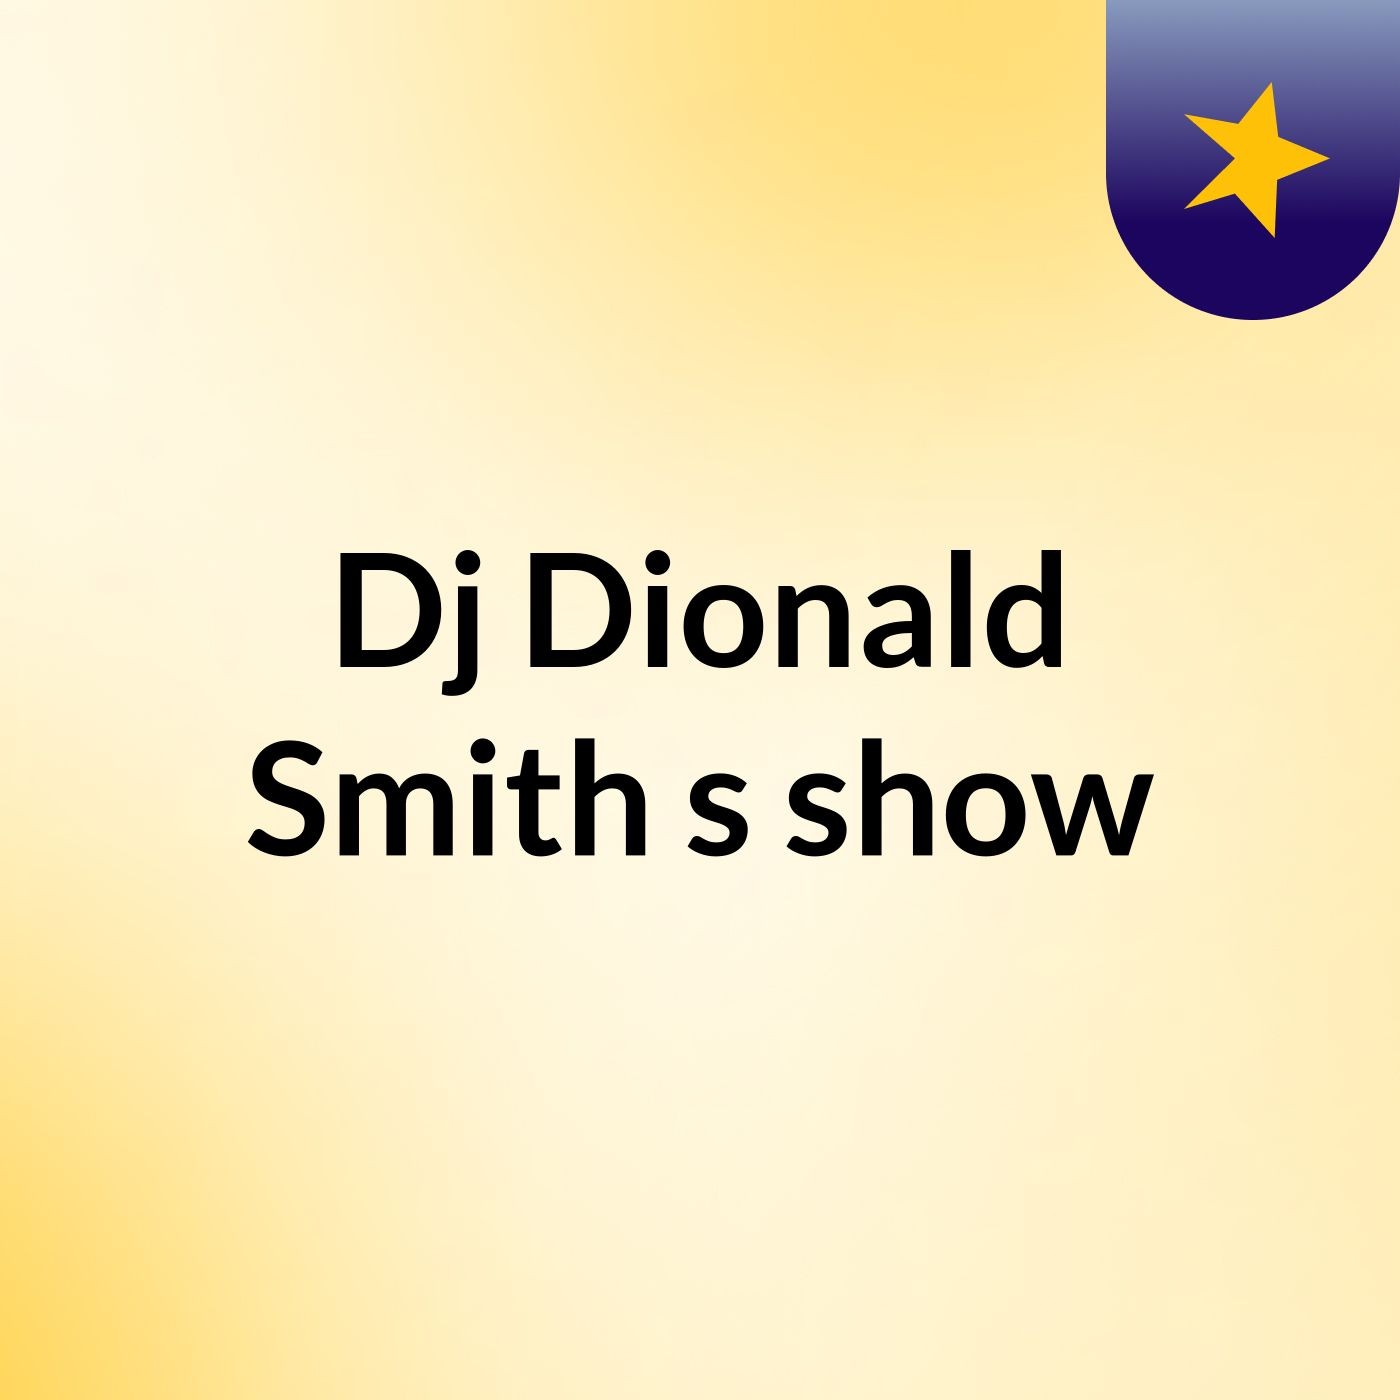 Episódio 4 - Dj'Dionald Smith's show